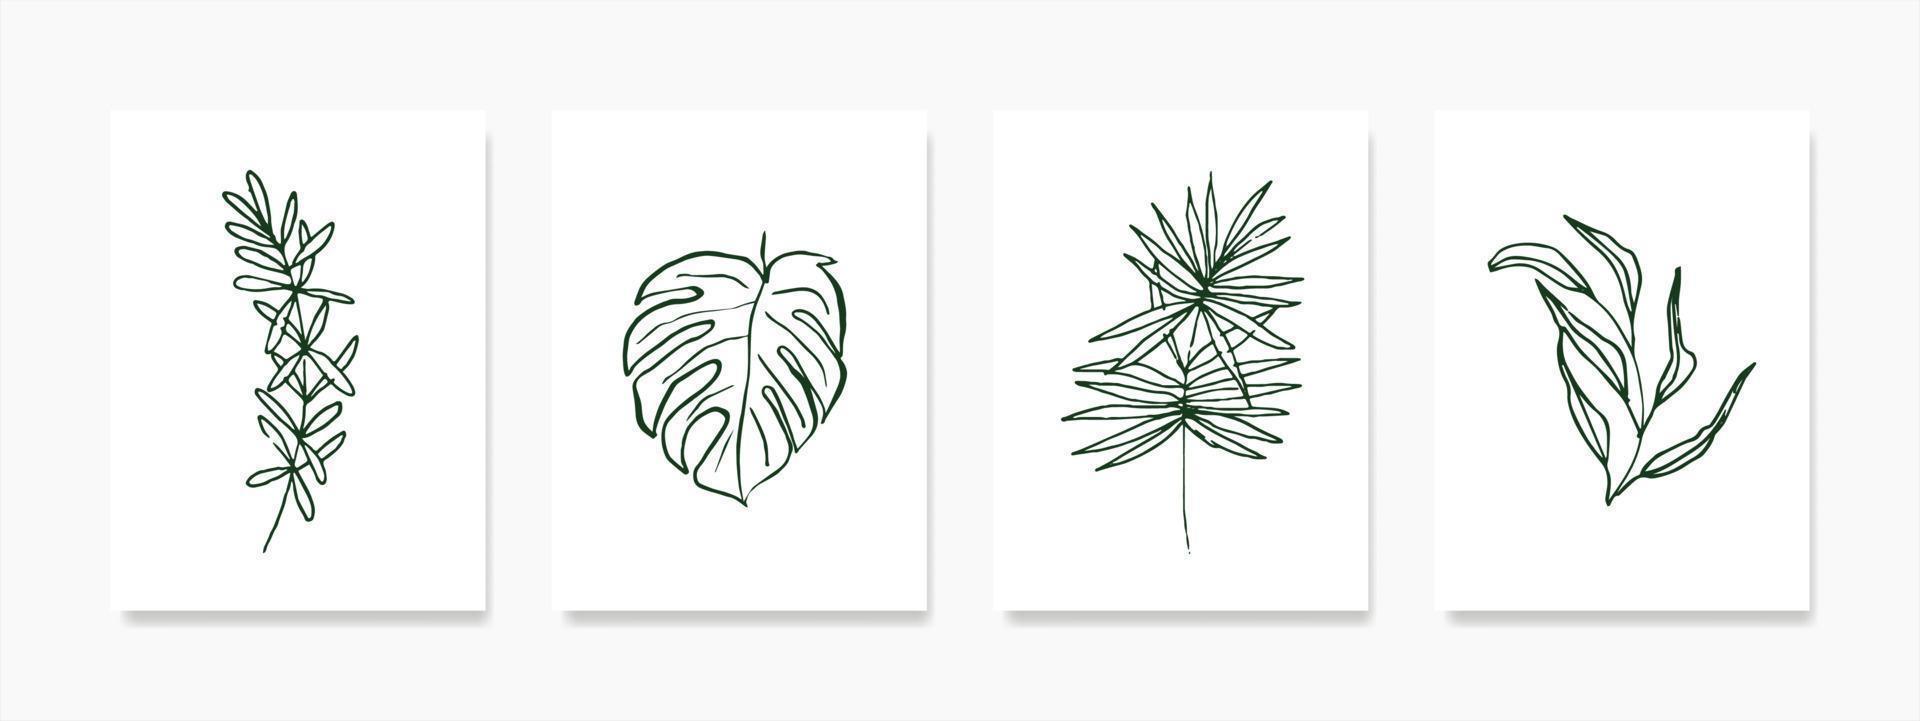 uppsättning botanisk vägg konst med grön skissat lövverk i linje konst teckning på en vit bakgrund. de abstrakt växt konst design är perfekt för grafik, täcker, och tapeter vektor